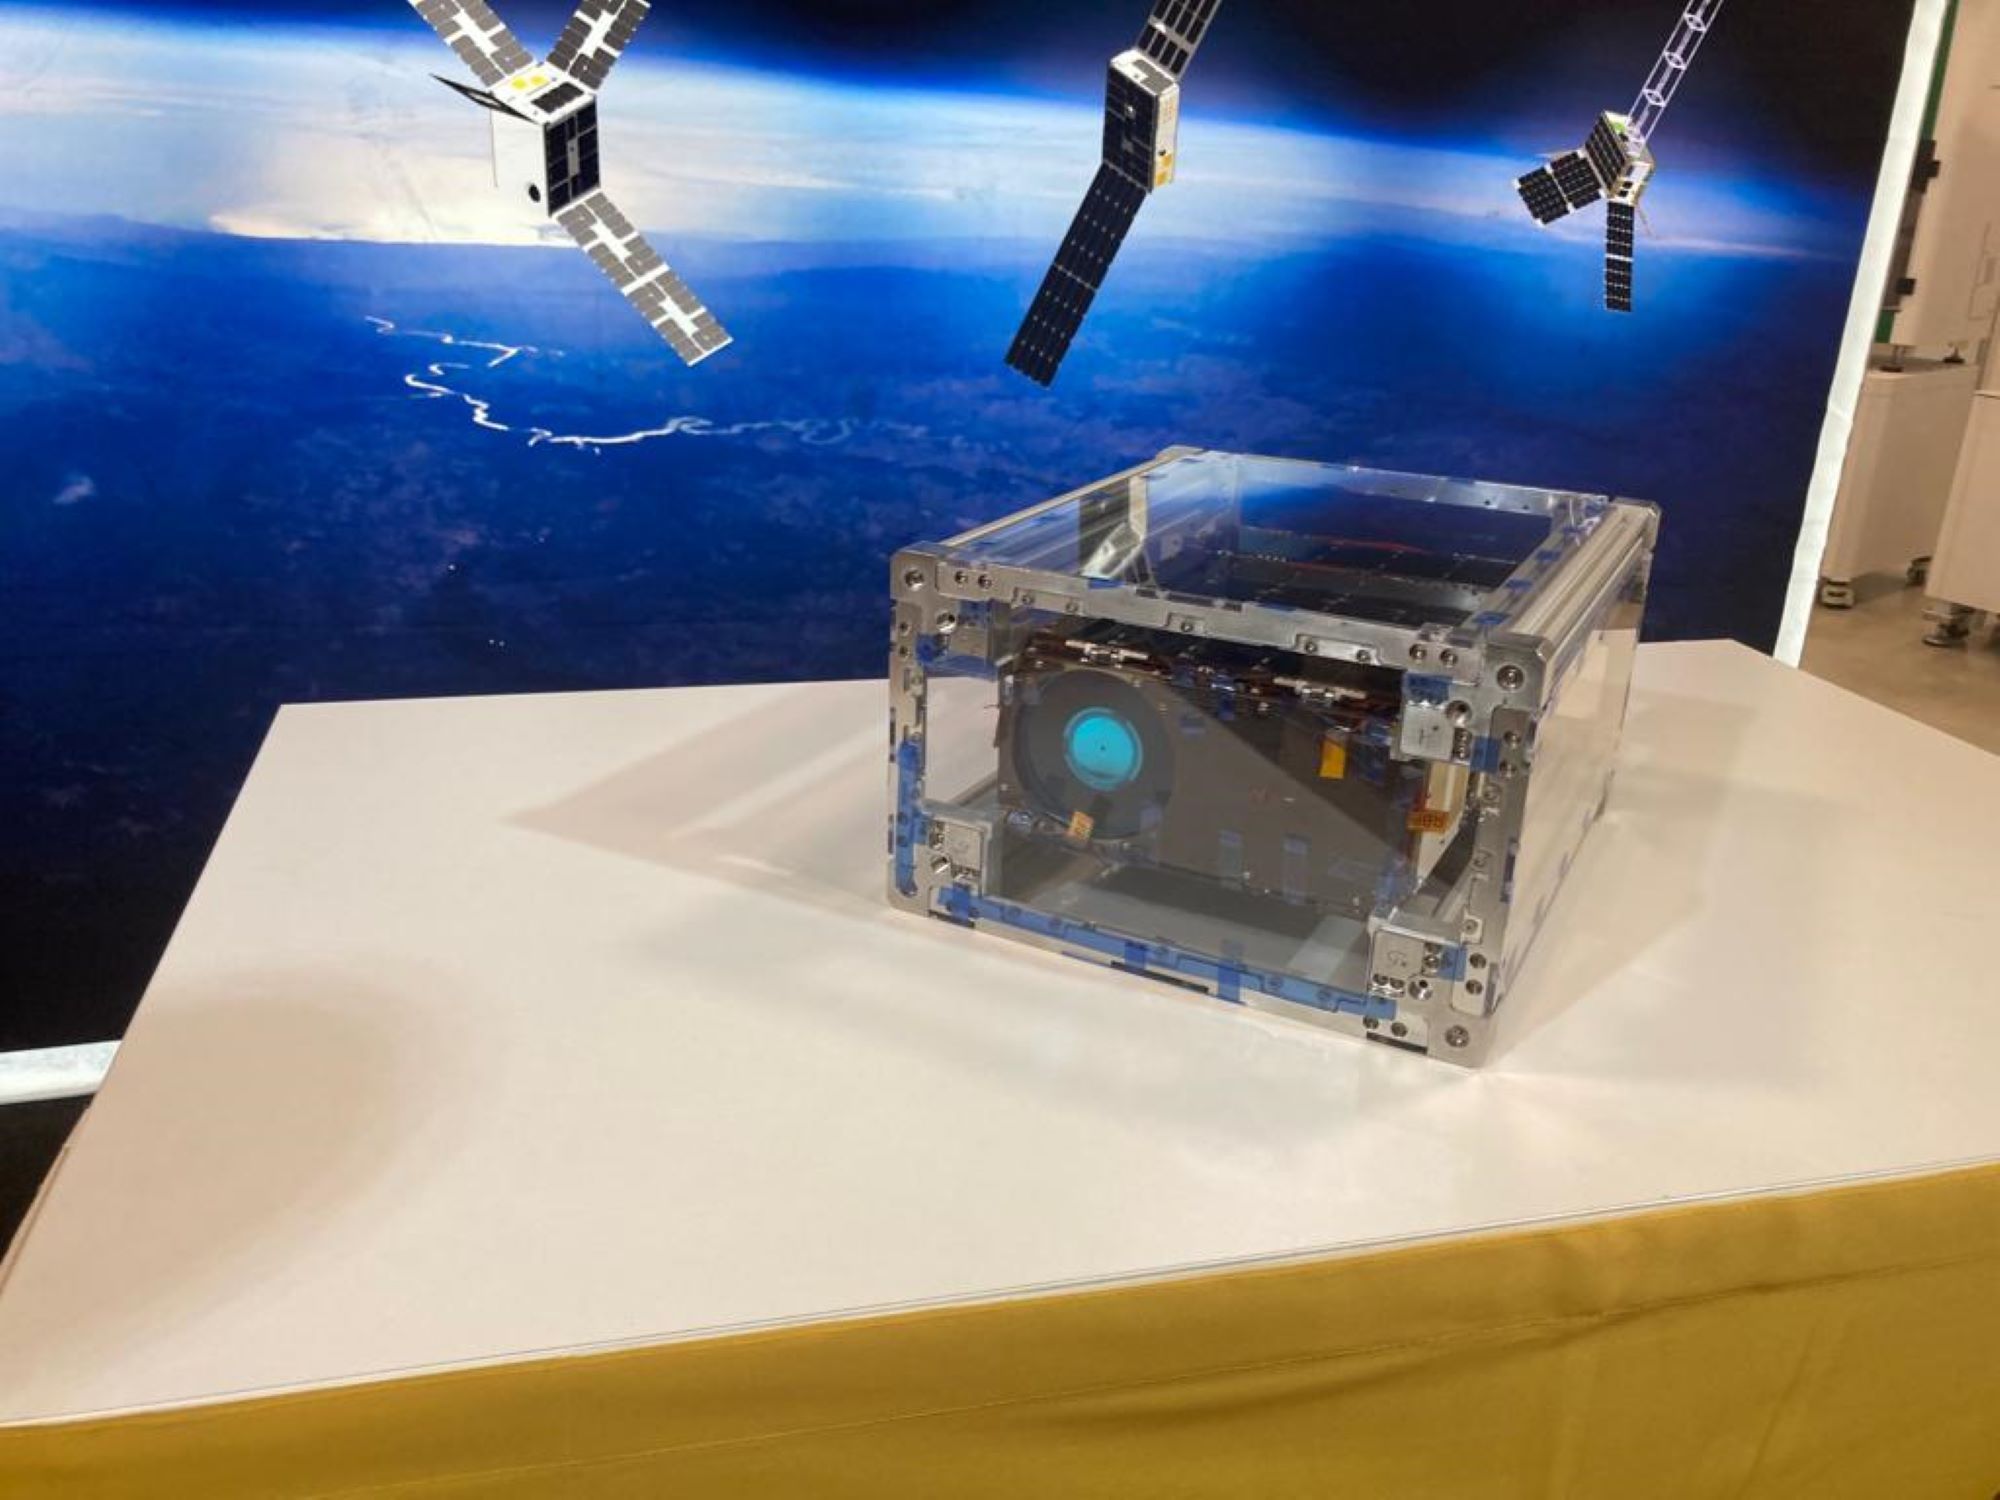 El nanosatèl·lit català 'Menut' s'enlairarà el 6 de desembre des de Florida